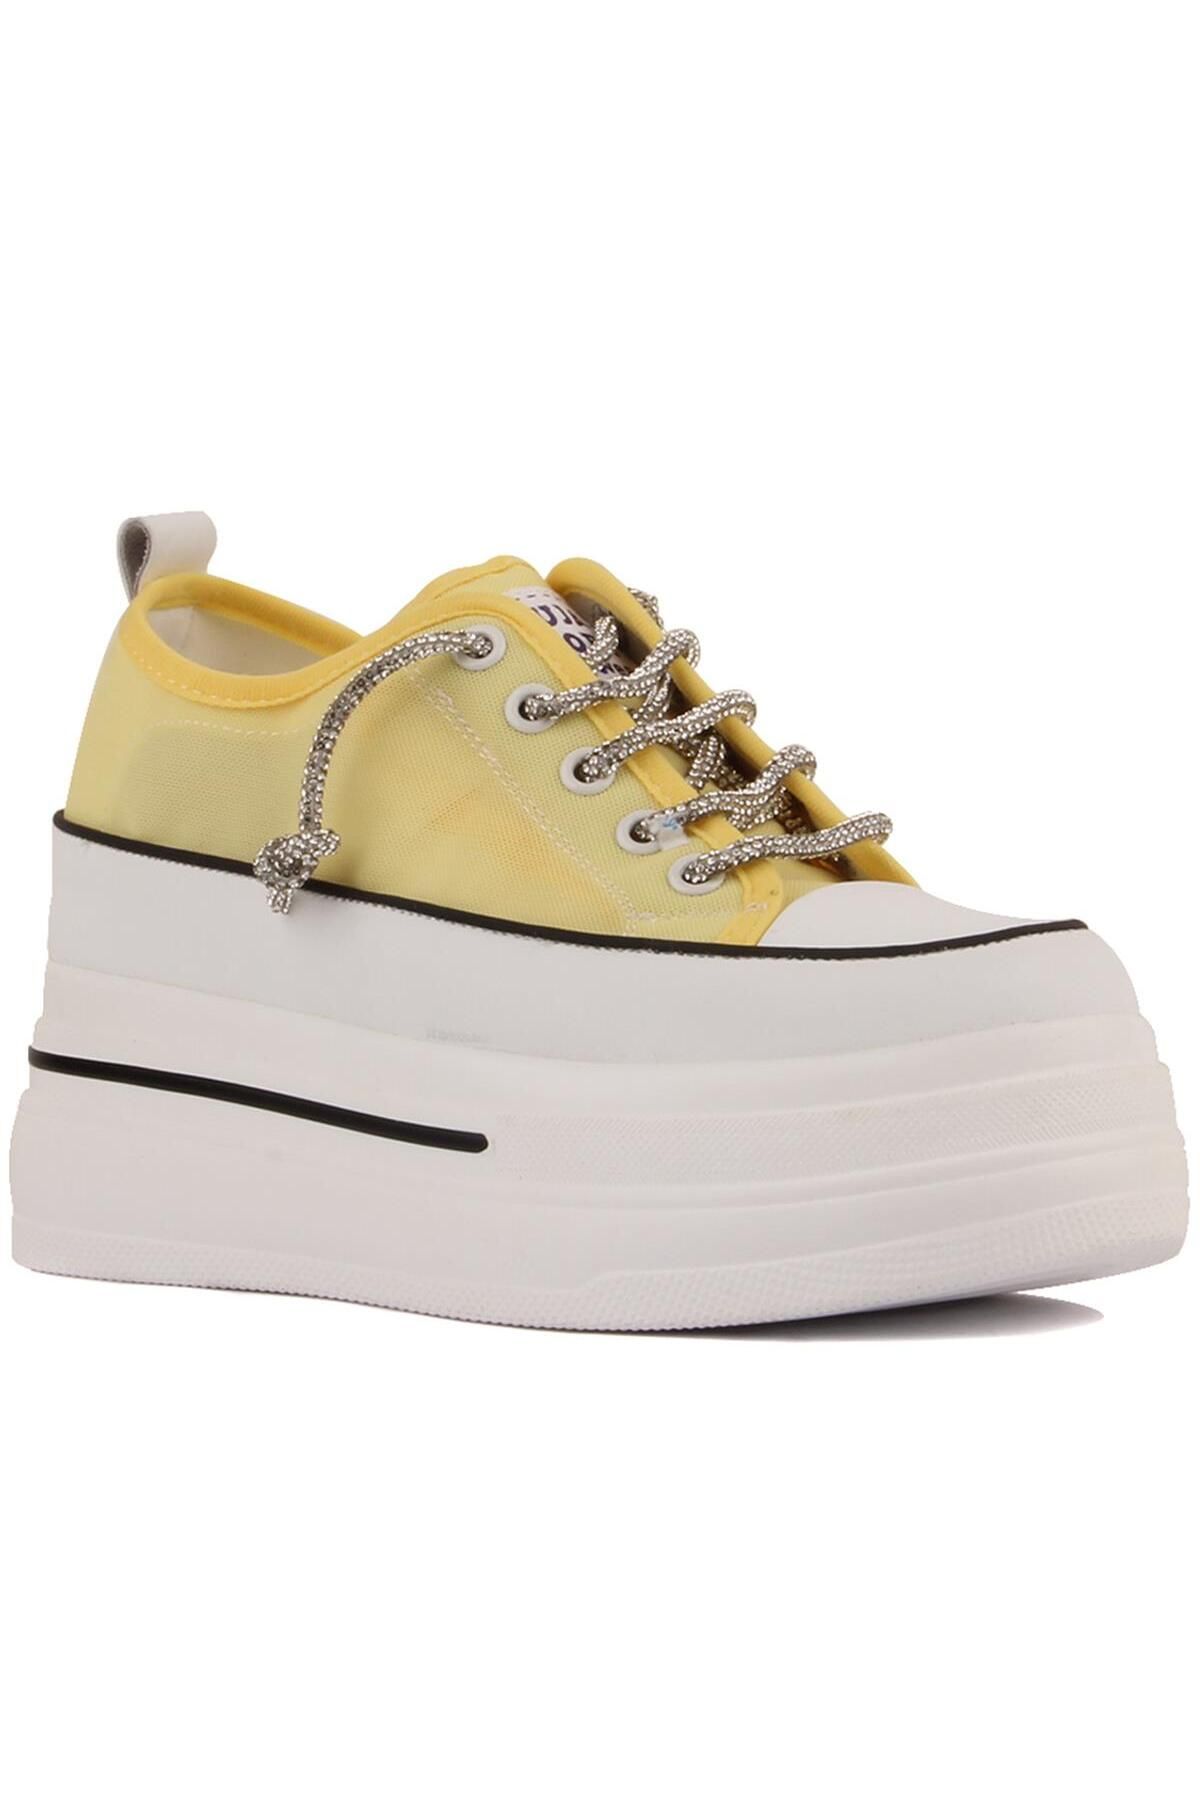 Guja 24y345-10 Sarı Kadın Ayakkabı